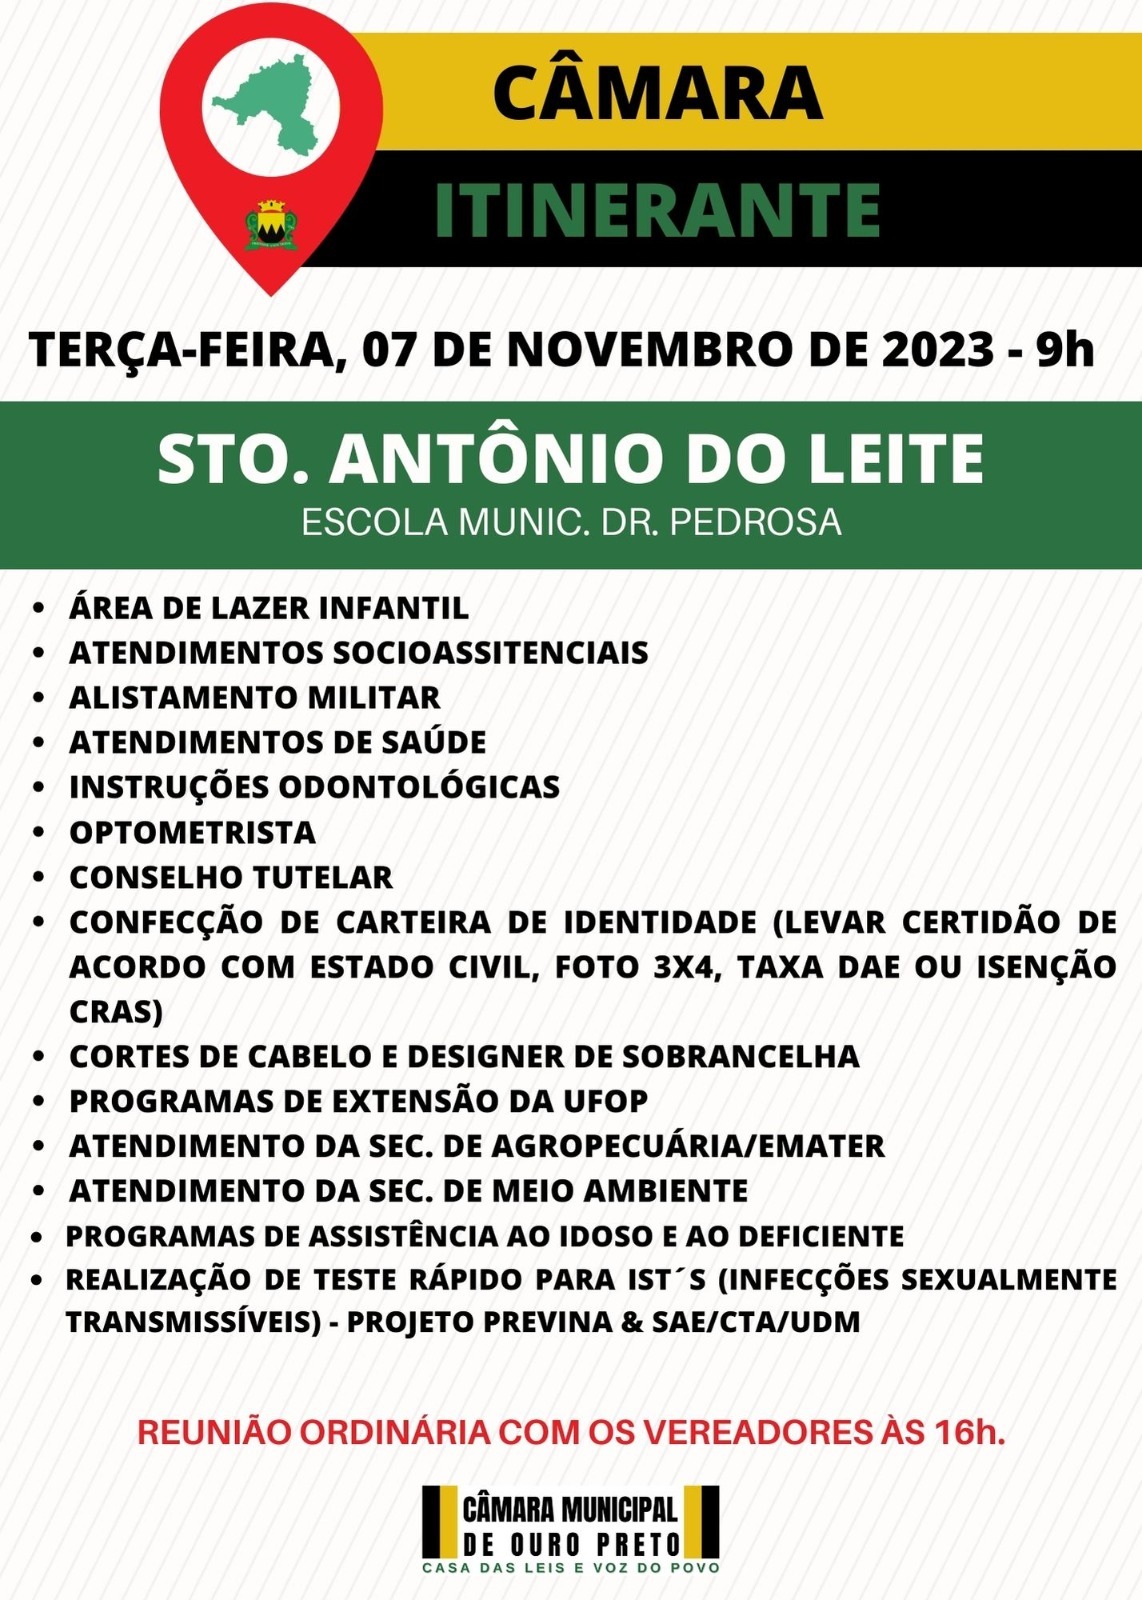 Câmara Municipal de Ouro Preto - Programa Câmara Itinerante será realizado em Santo Antônio do Leite